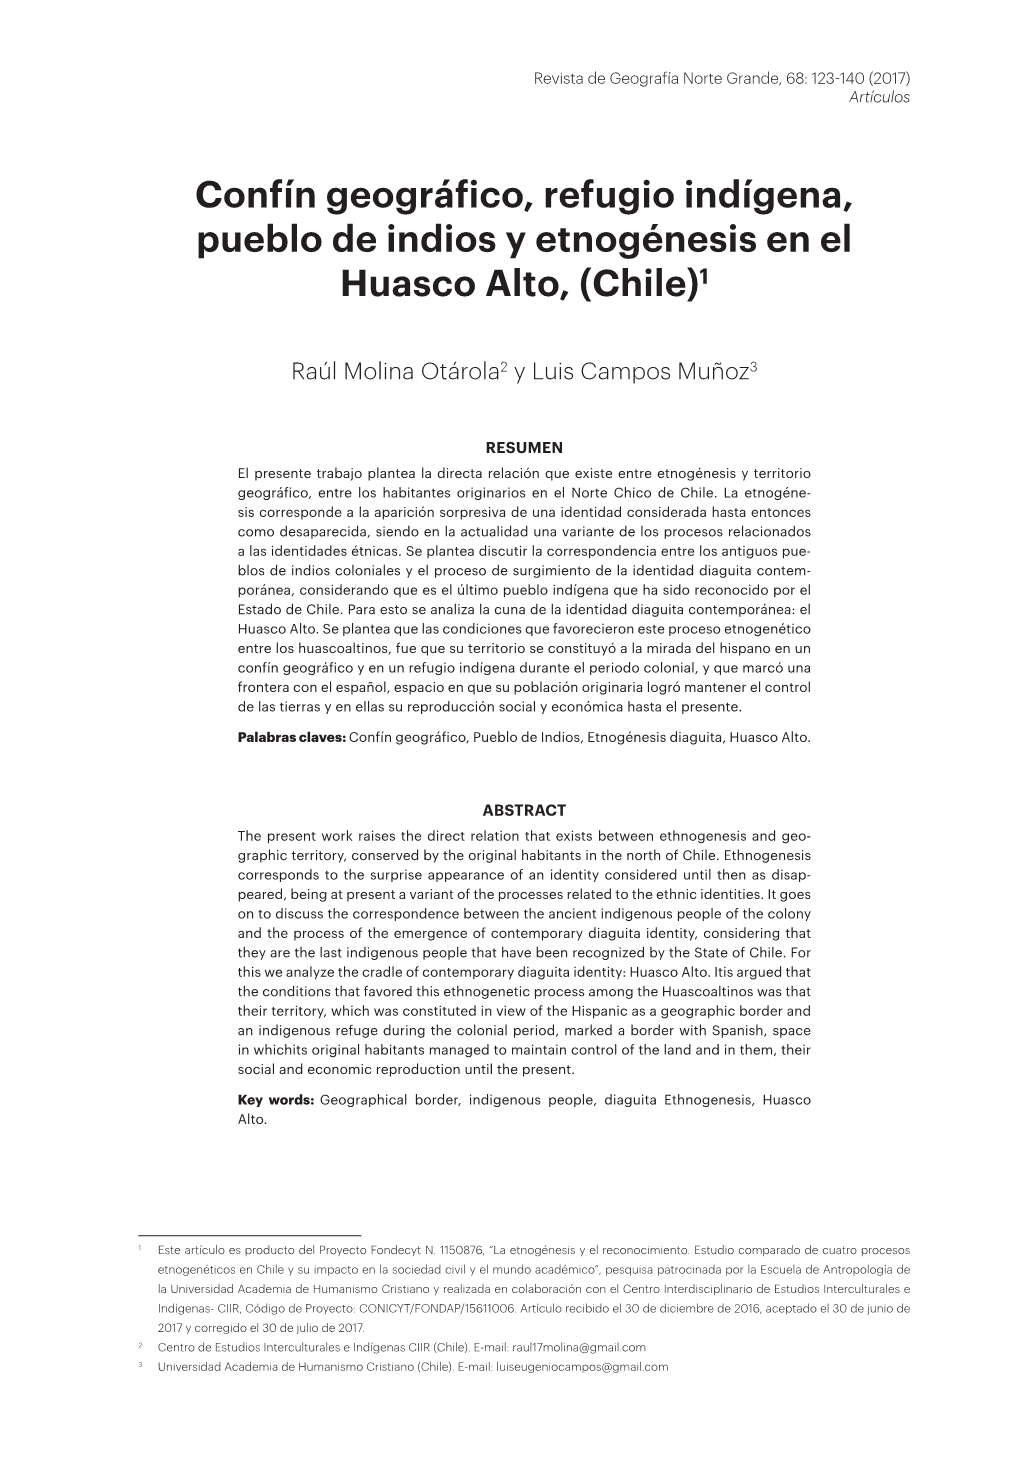 Confín Geográfico, Refugio Indígena, Pueblo De Indios Y Etnogénesis En El Huasco Alto, (Chile)1